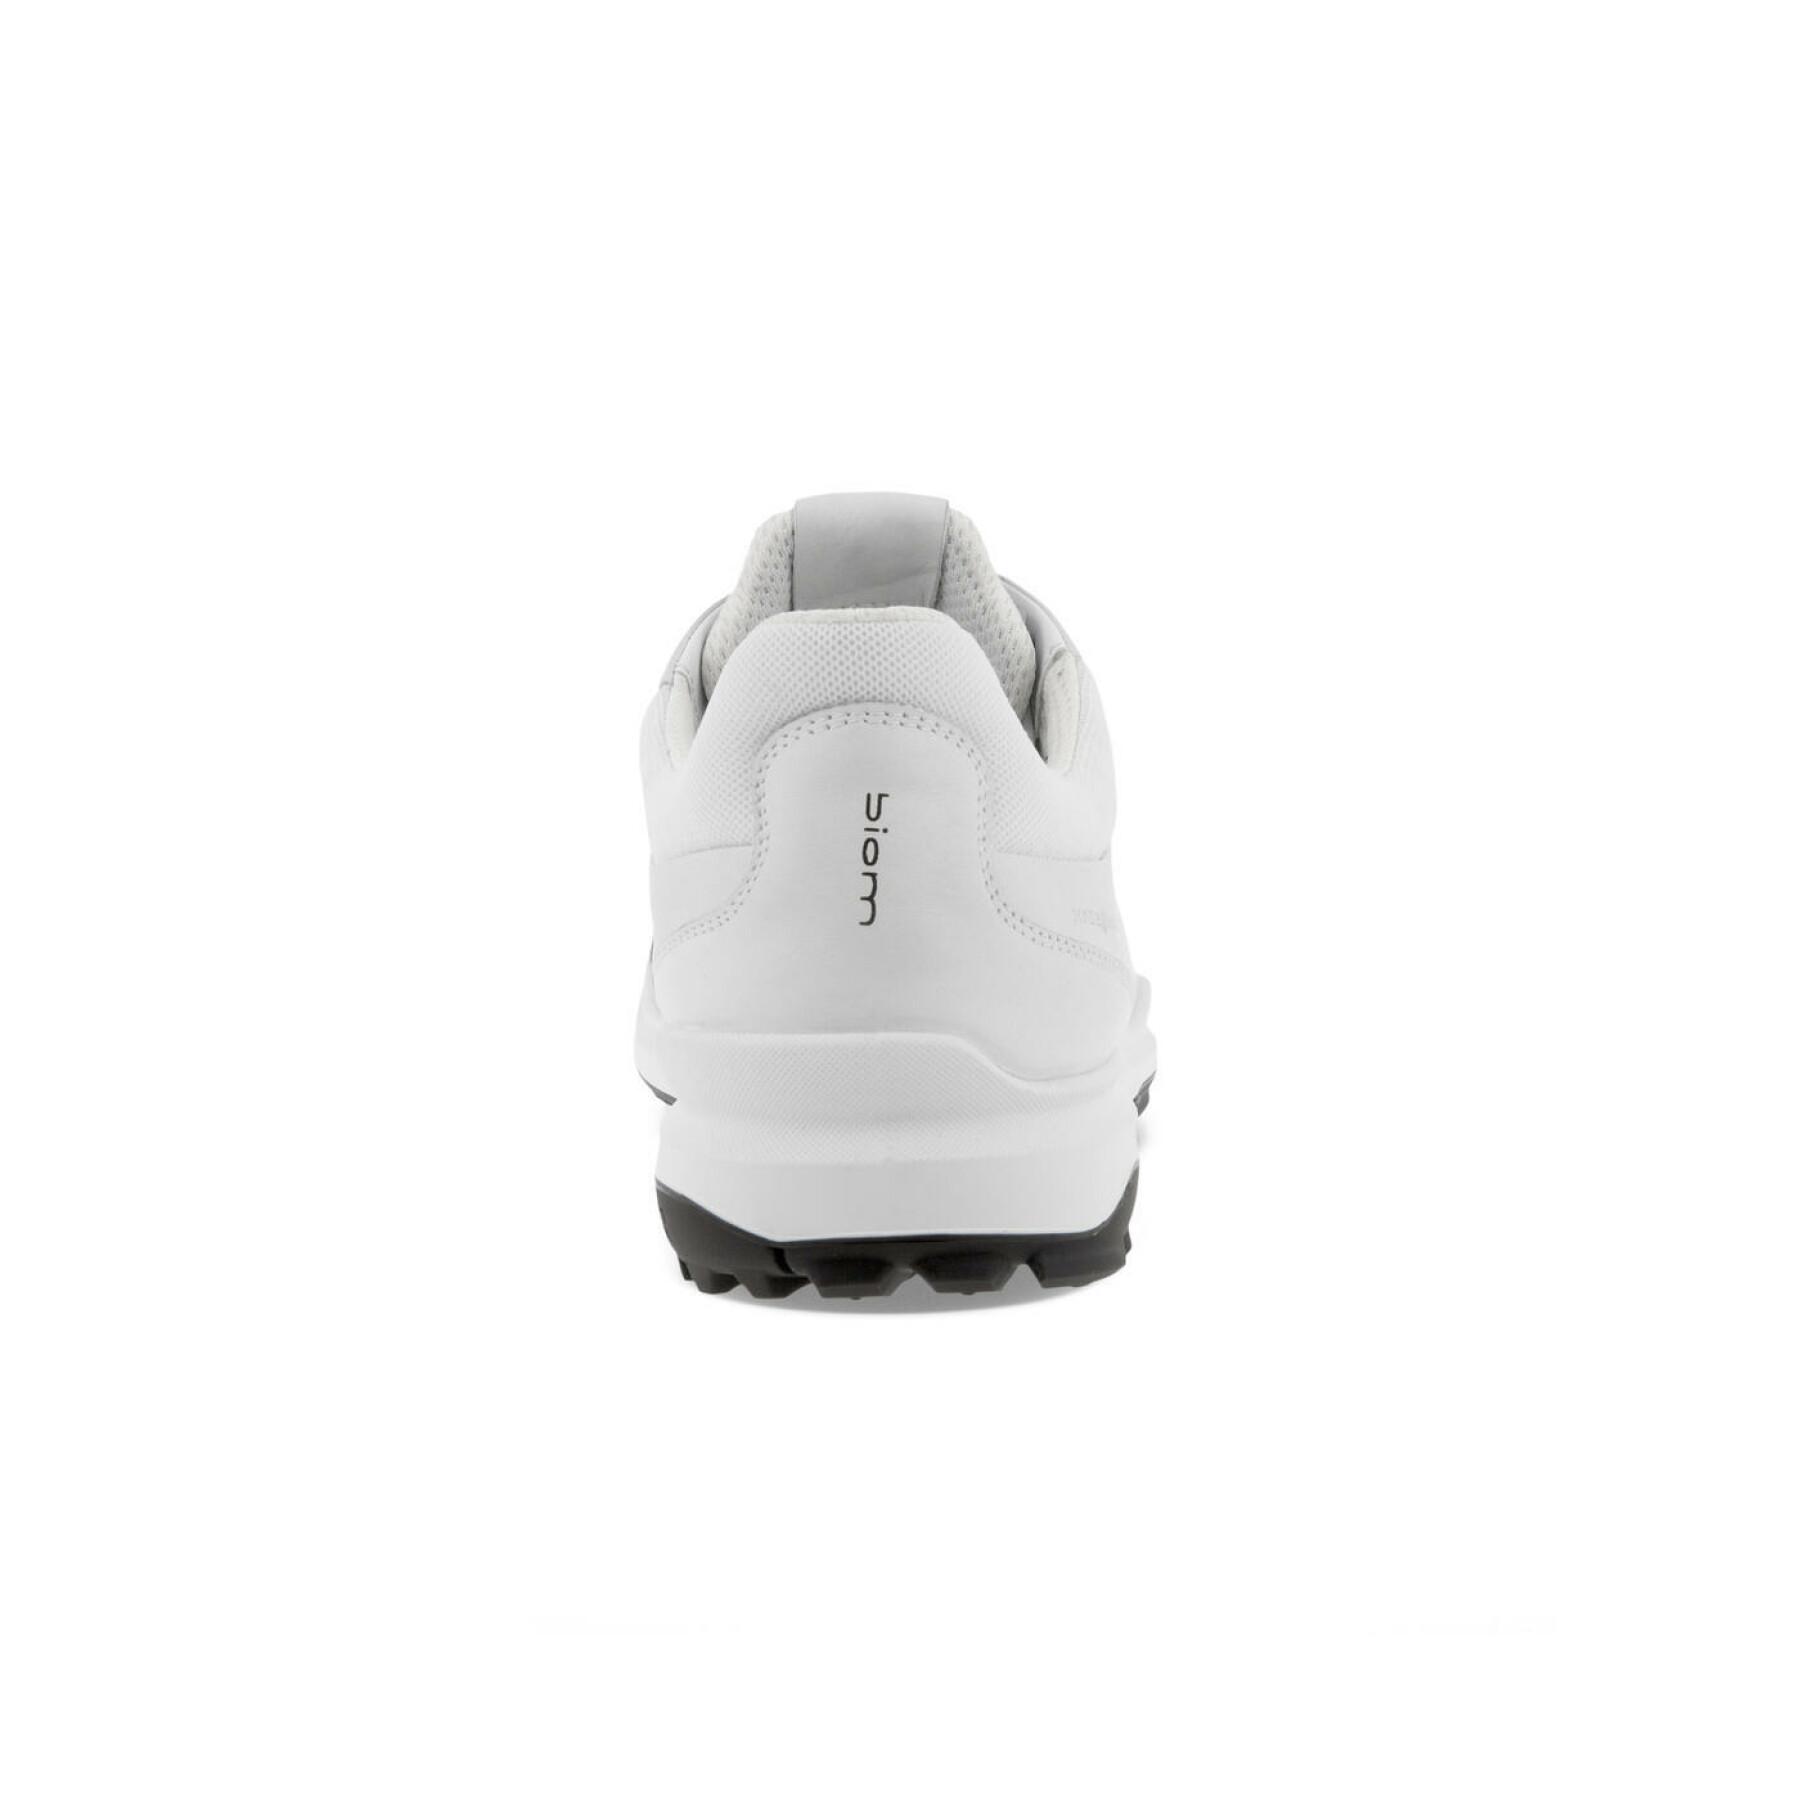 Golf shoes Ecco Biom Hybrid 3 Smu